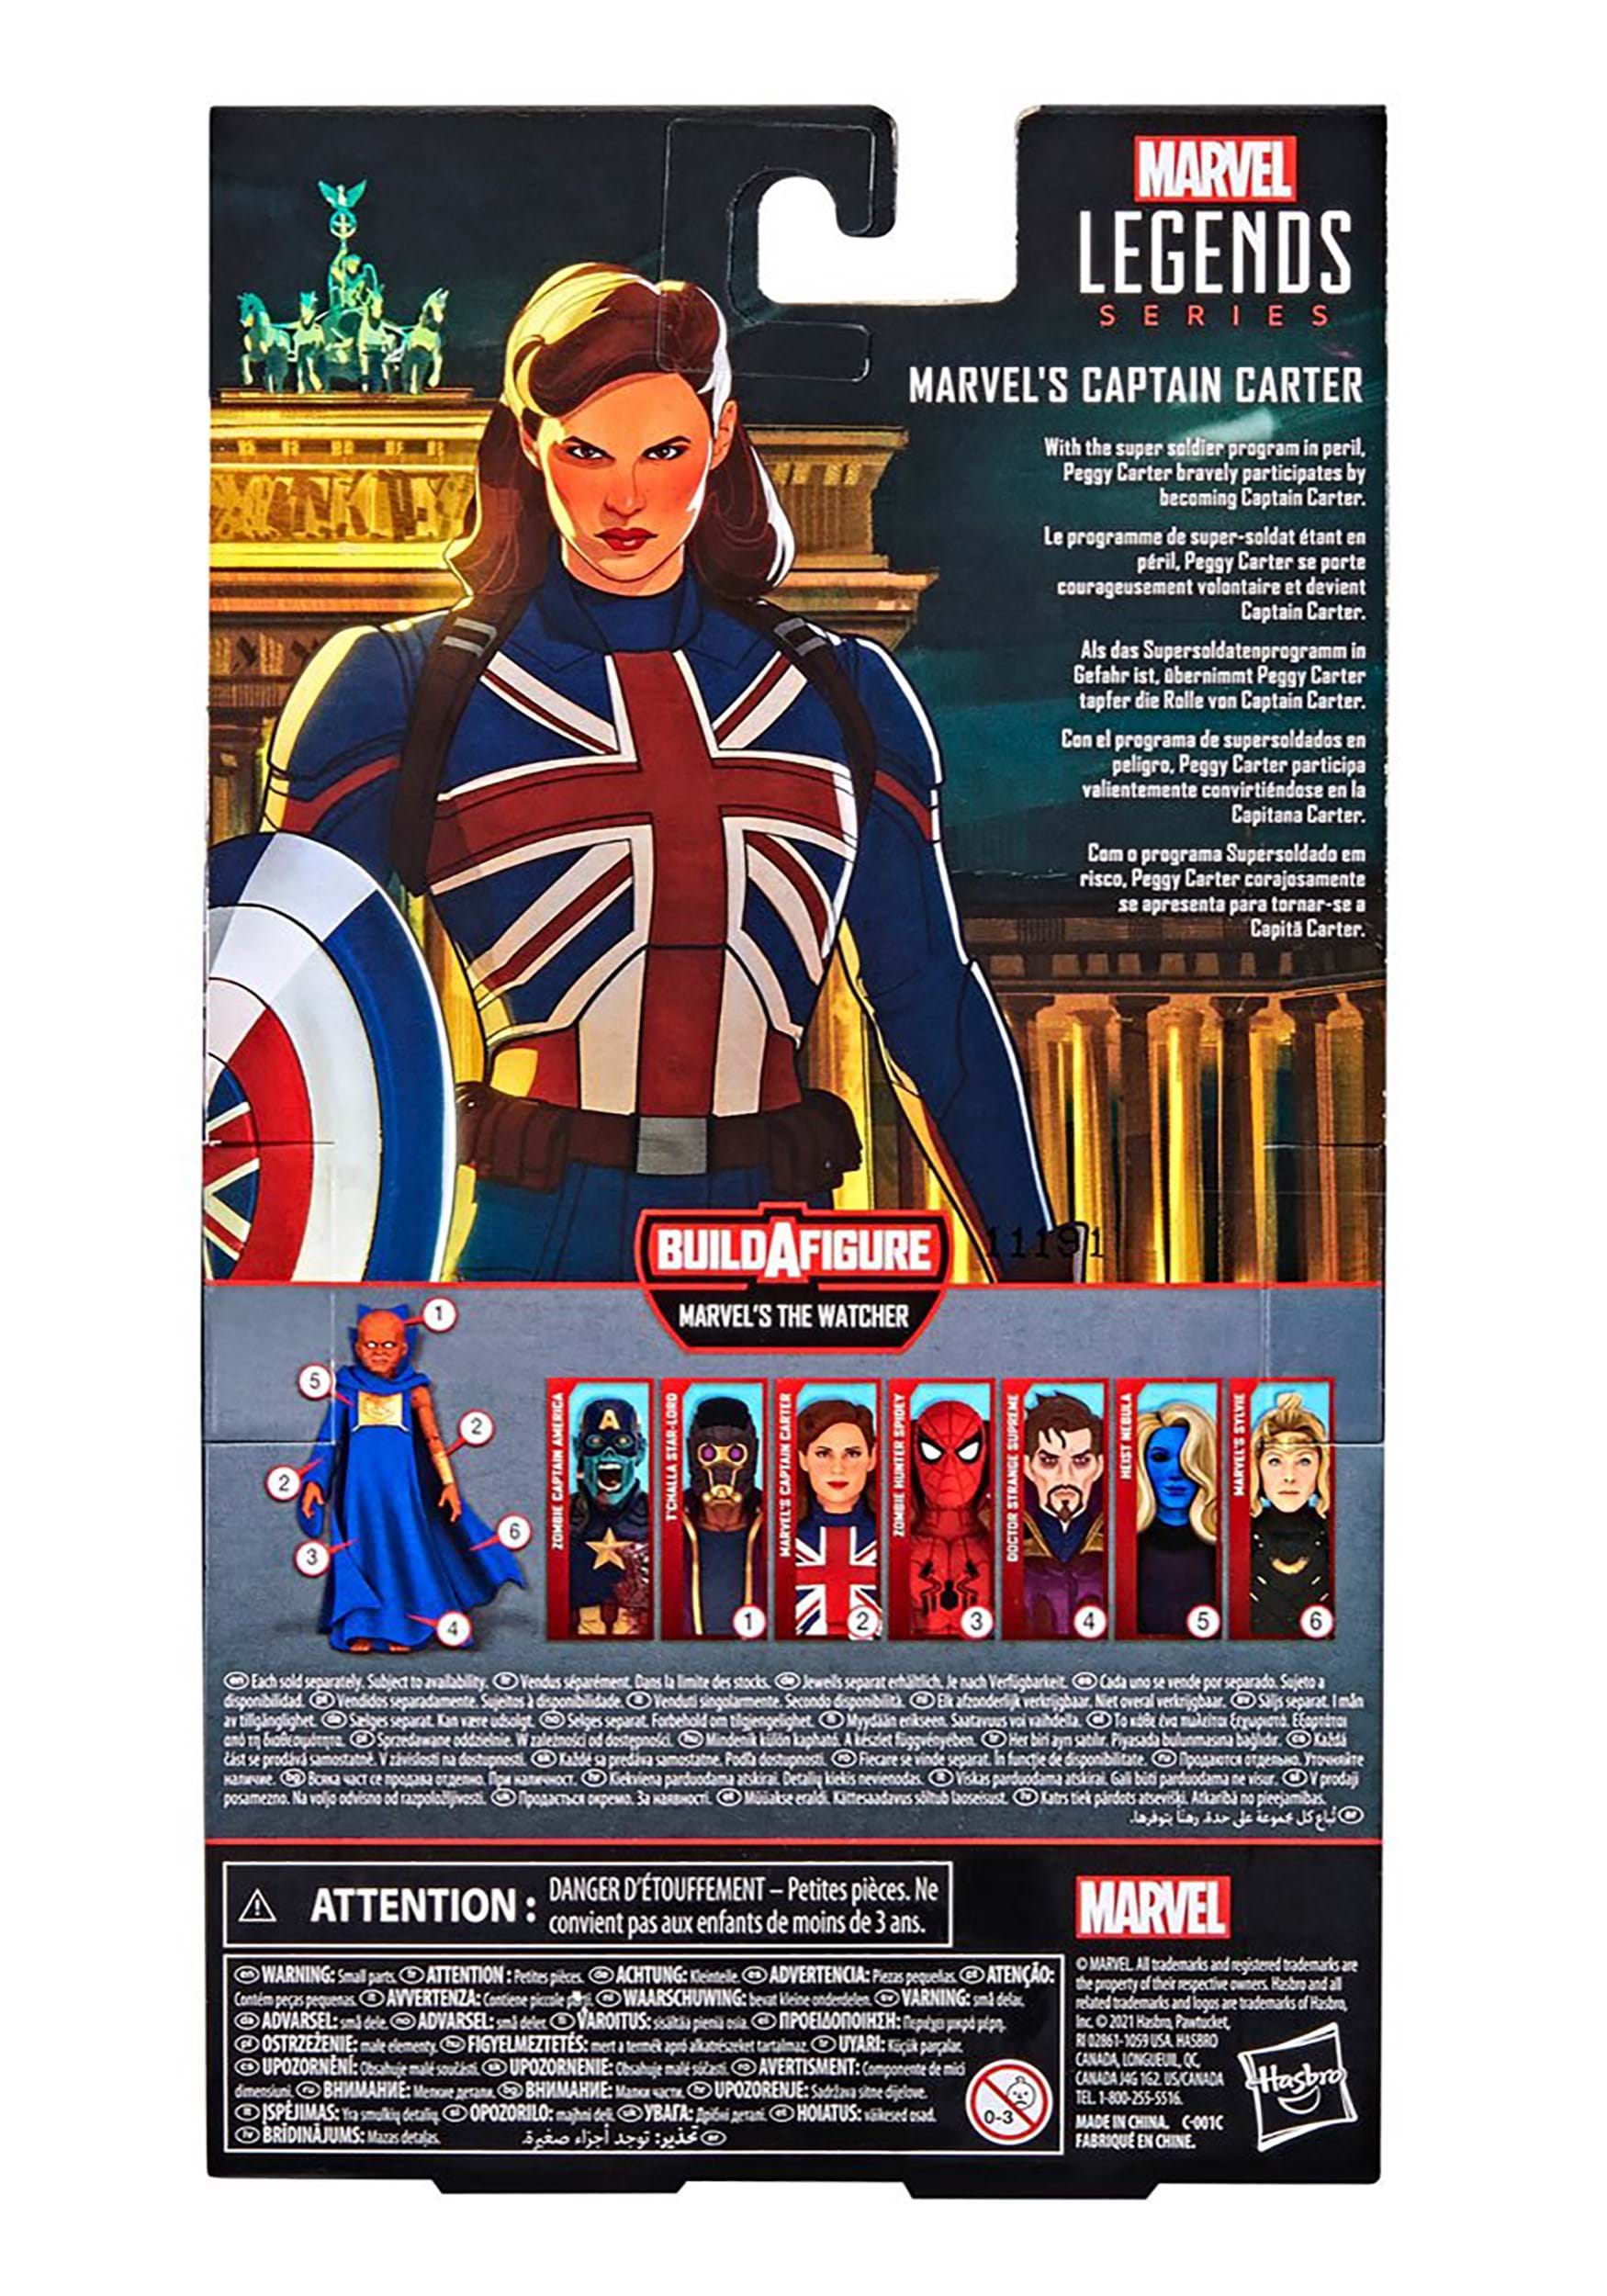 1 Accessoire et 2 pièces Build-a-Figure F0331 Multicolore Avengers Hasbro Marvel Legends Series Design Premium Figurine Captain Carter de 15 cm 